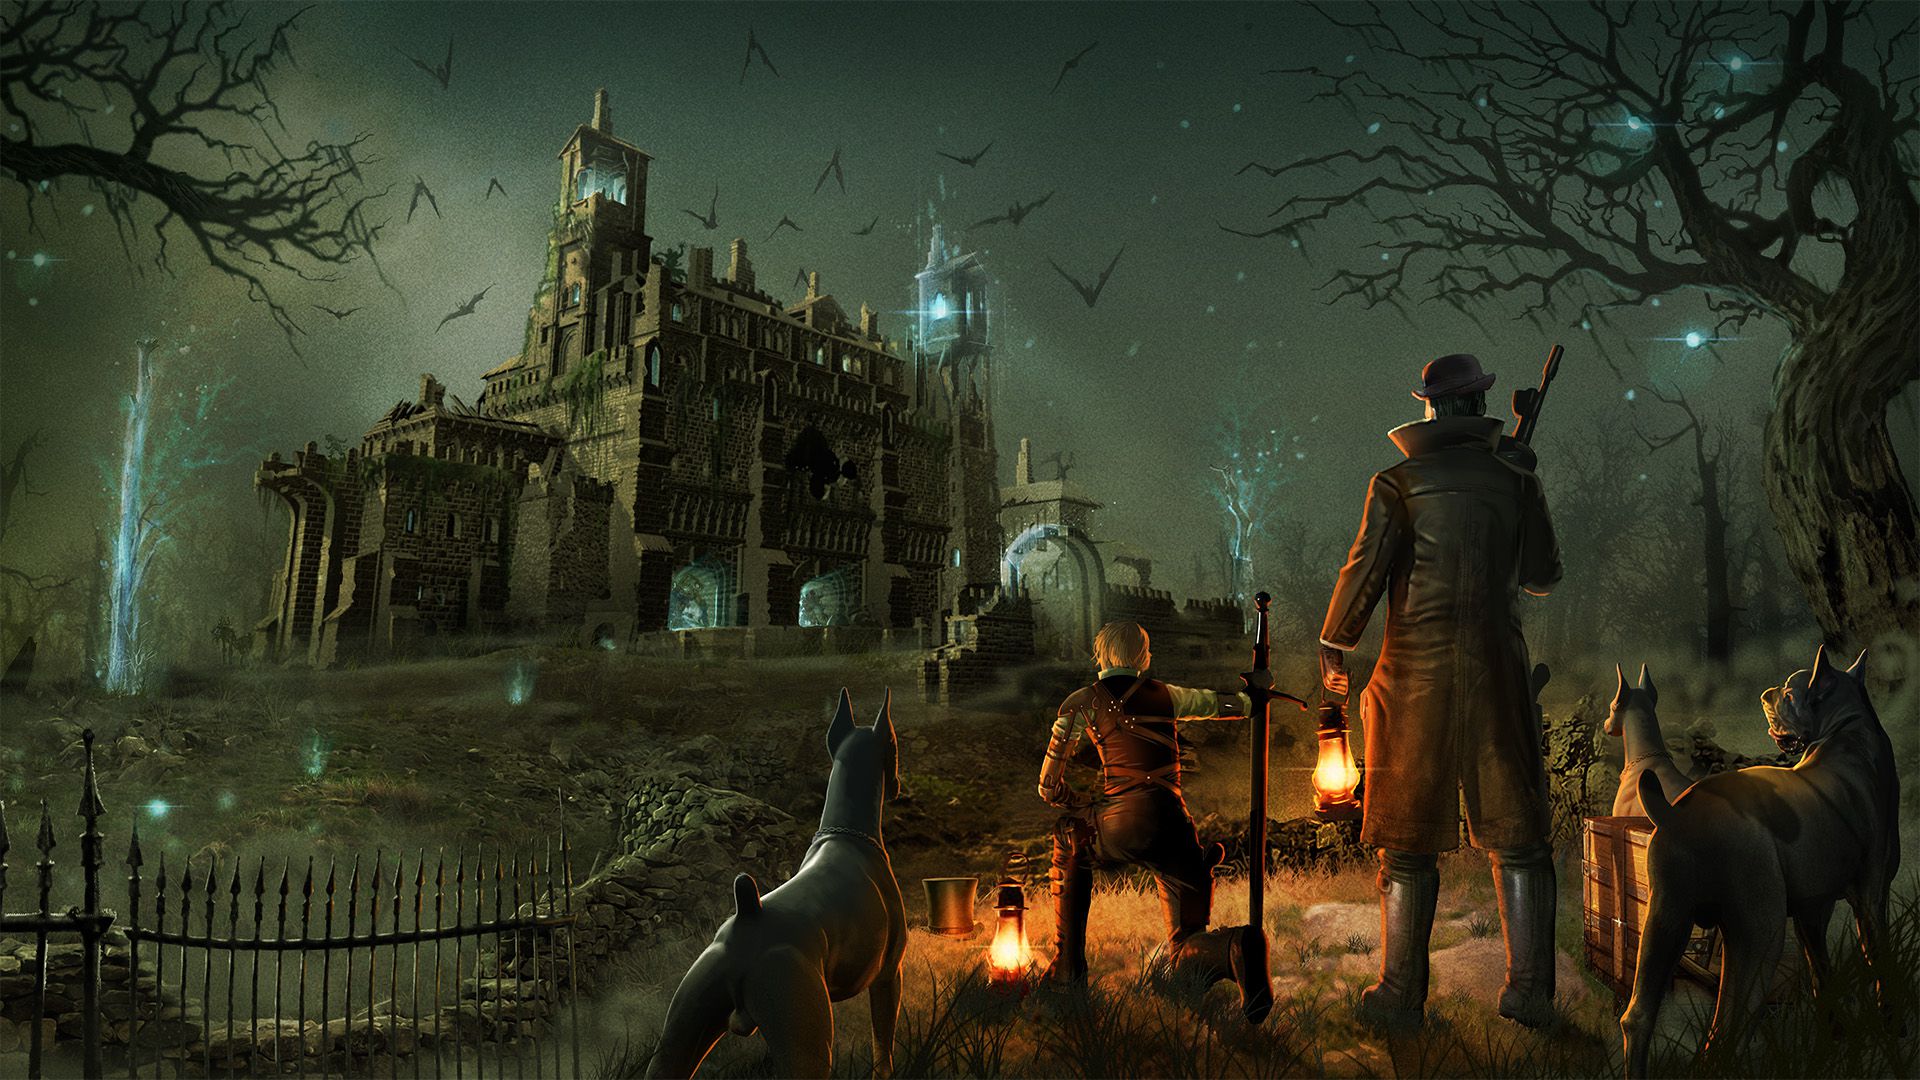 Una donna con una claymore e un uomo con una pistola Tommy si trovano accanto a tre cani da caccia. In lontananza, i pipistrelli fuggono da un'abbazia luminosa che sorge dalle brughiere.